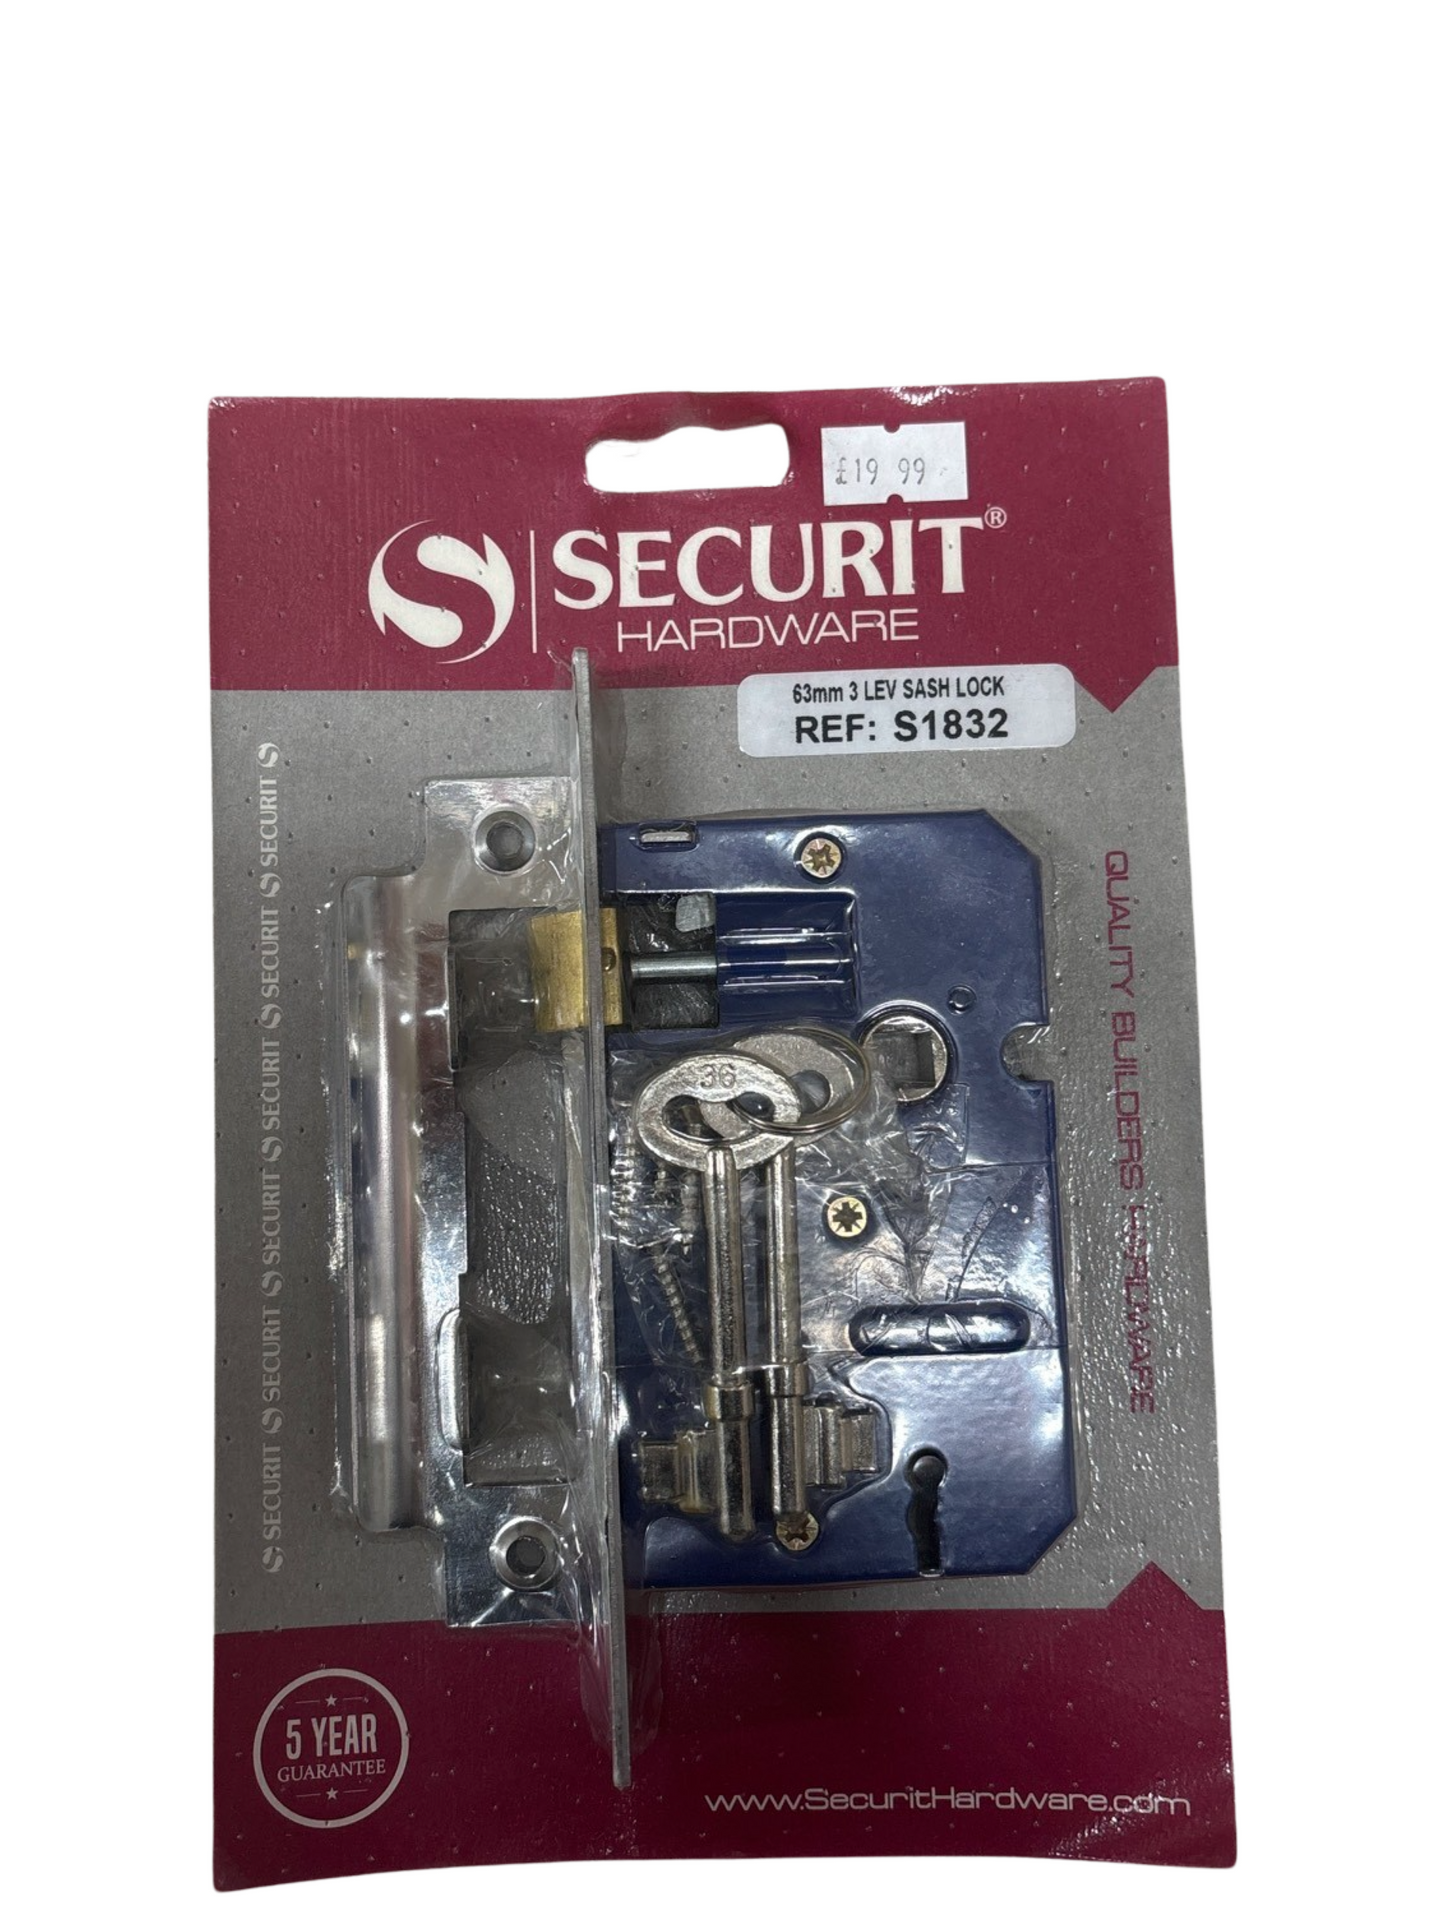 63mm 3LEV sash lock